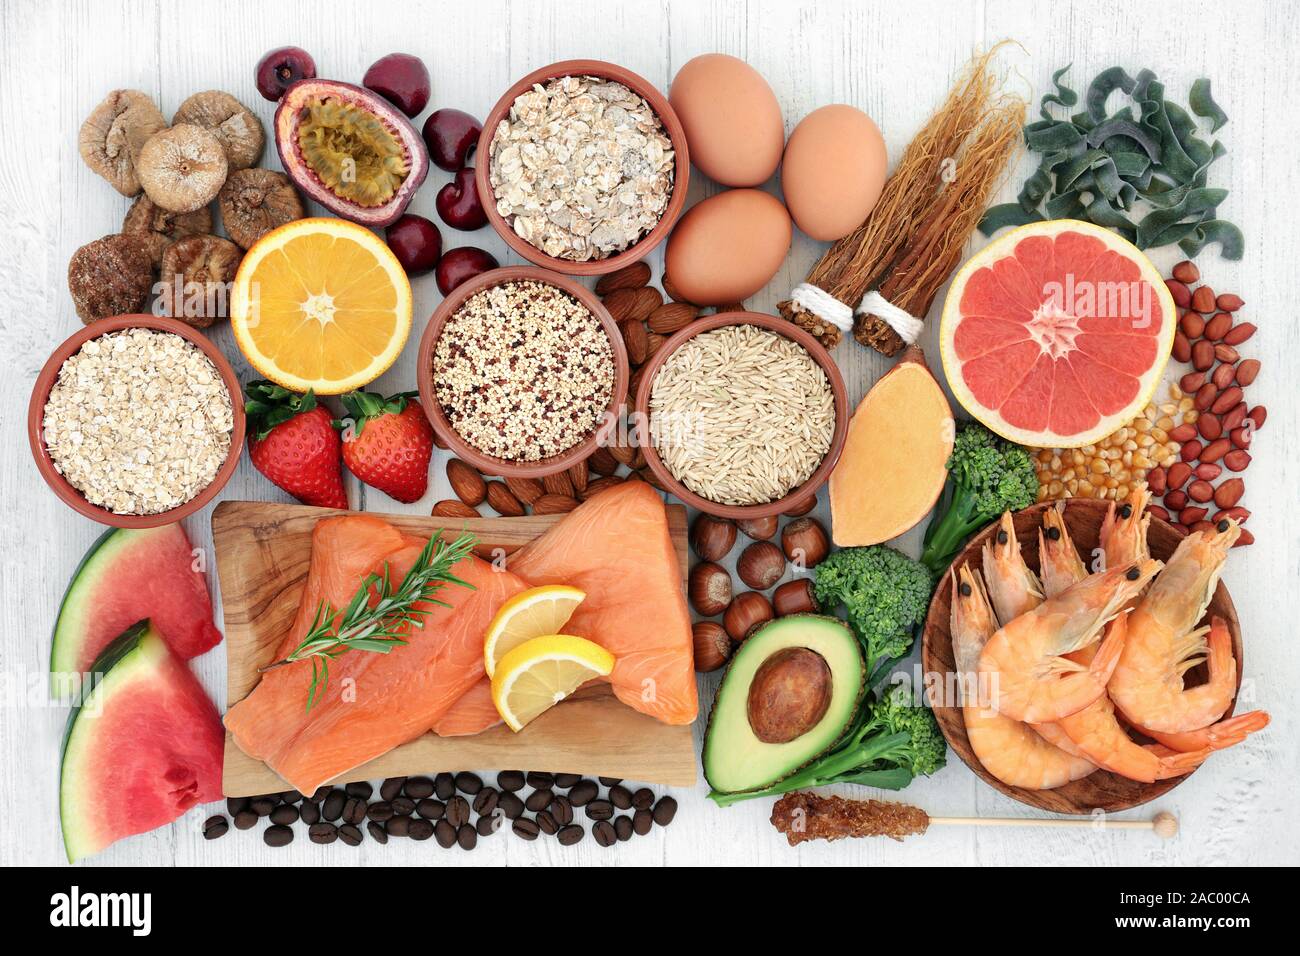 Hohe Energie Gesundheit Nahrung für Vitalität & Fitness mit Fisch, Obst, Gemüse, Getreide, Nudeln, Getreide, Nüsse & Kräutern. Stockfoto